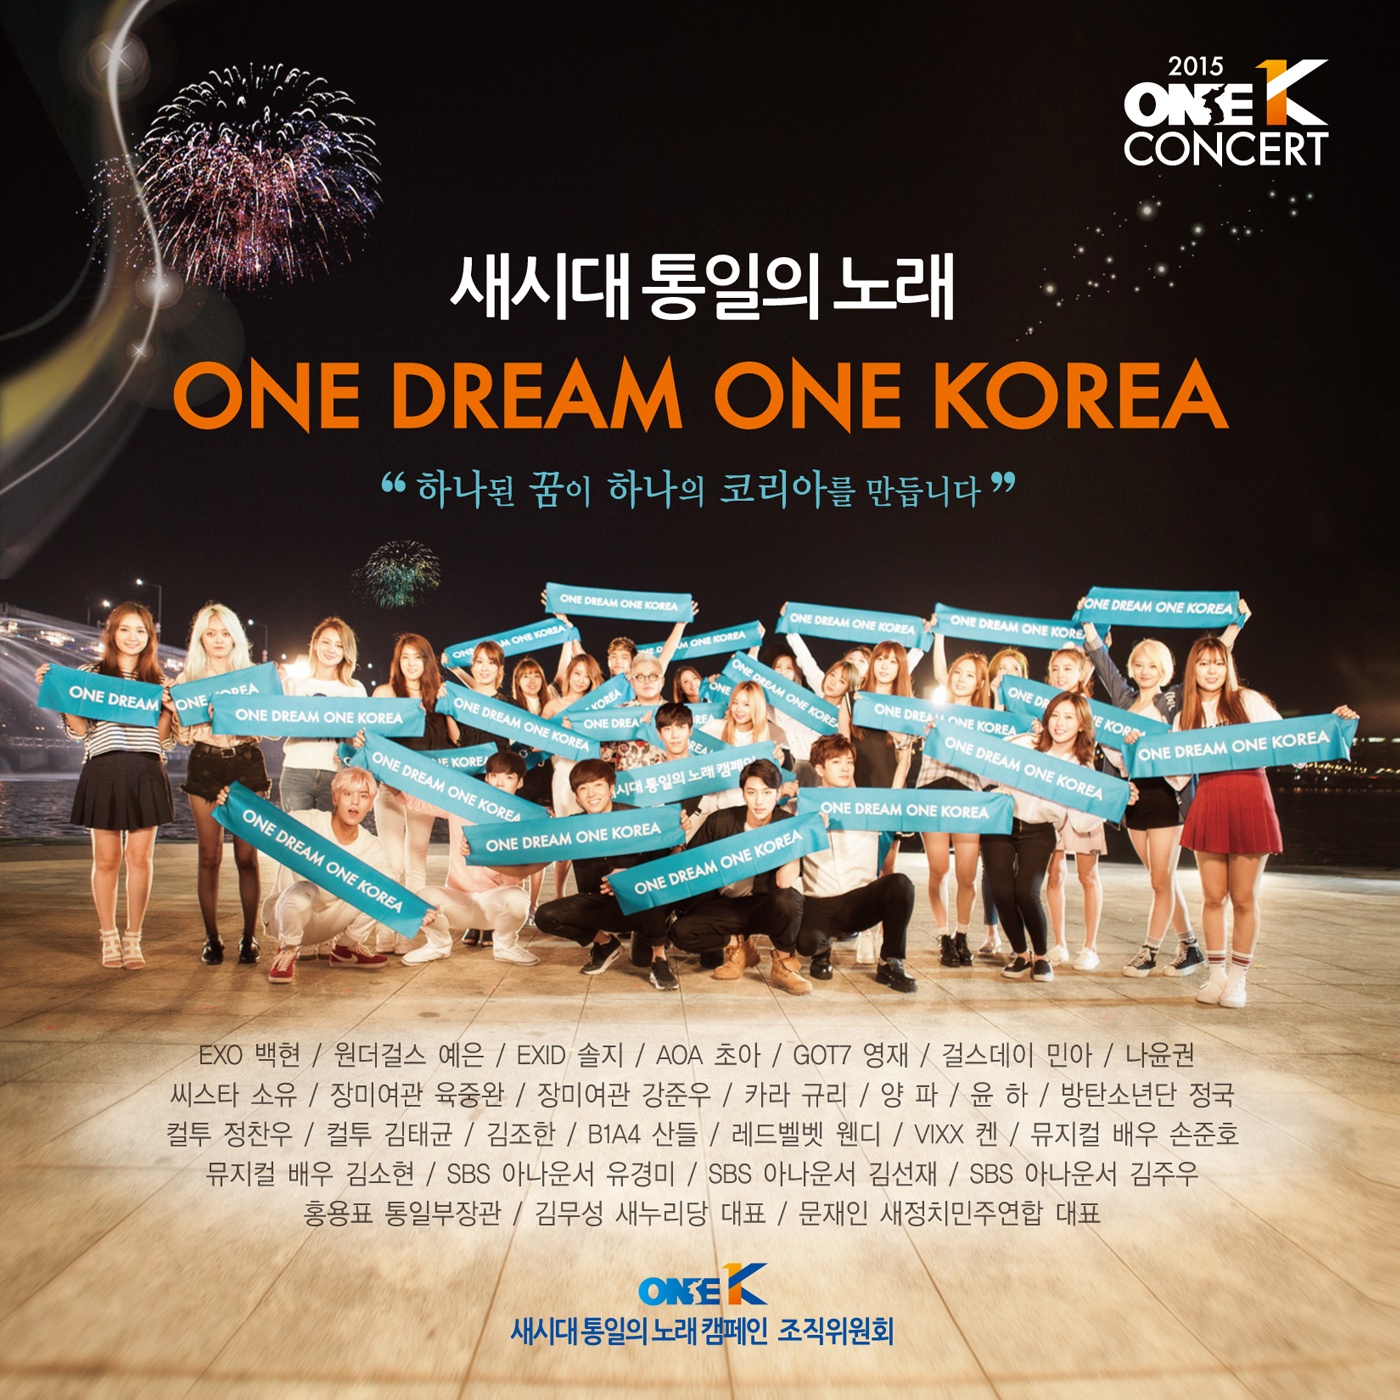 One Dream One Korea (Original Ver.)